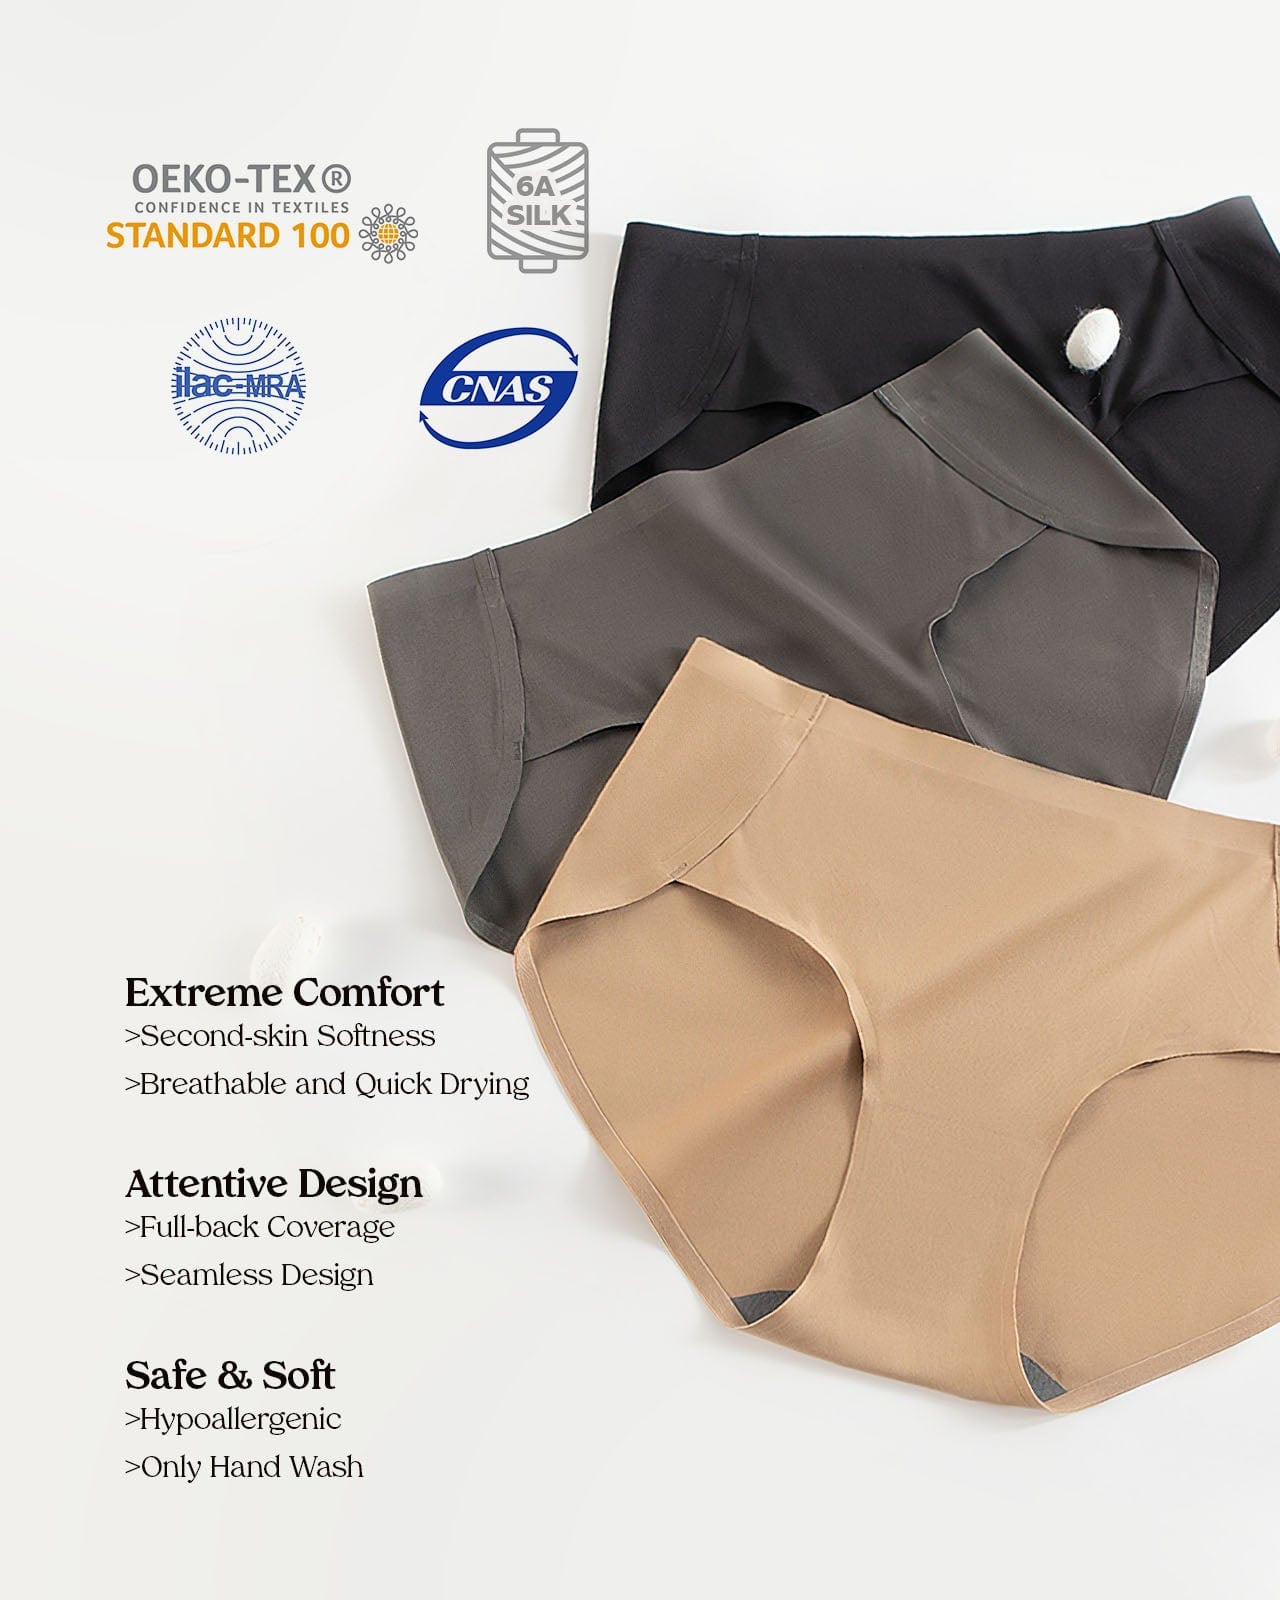 FEELITS Silk Seamless Sports Underwear For Women